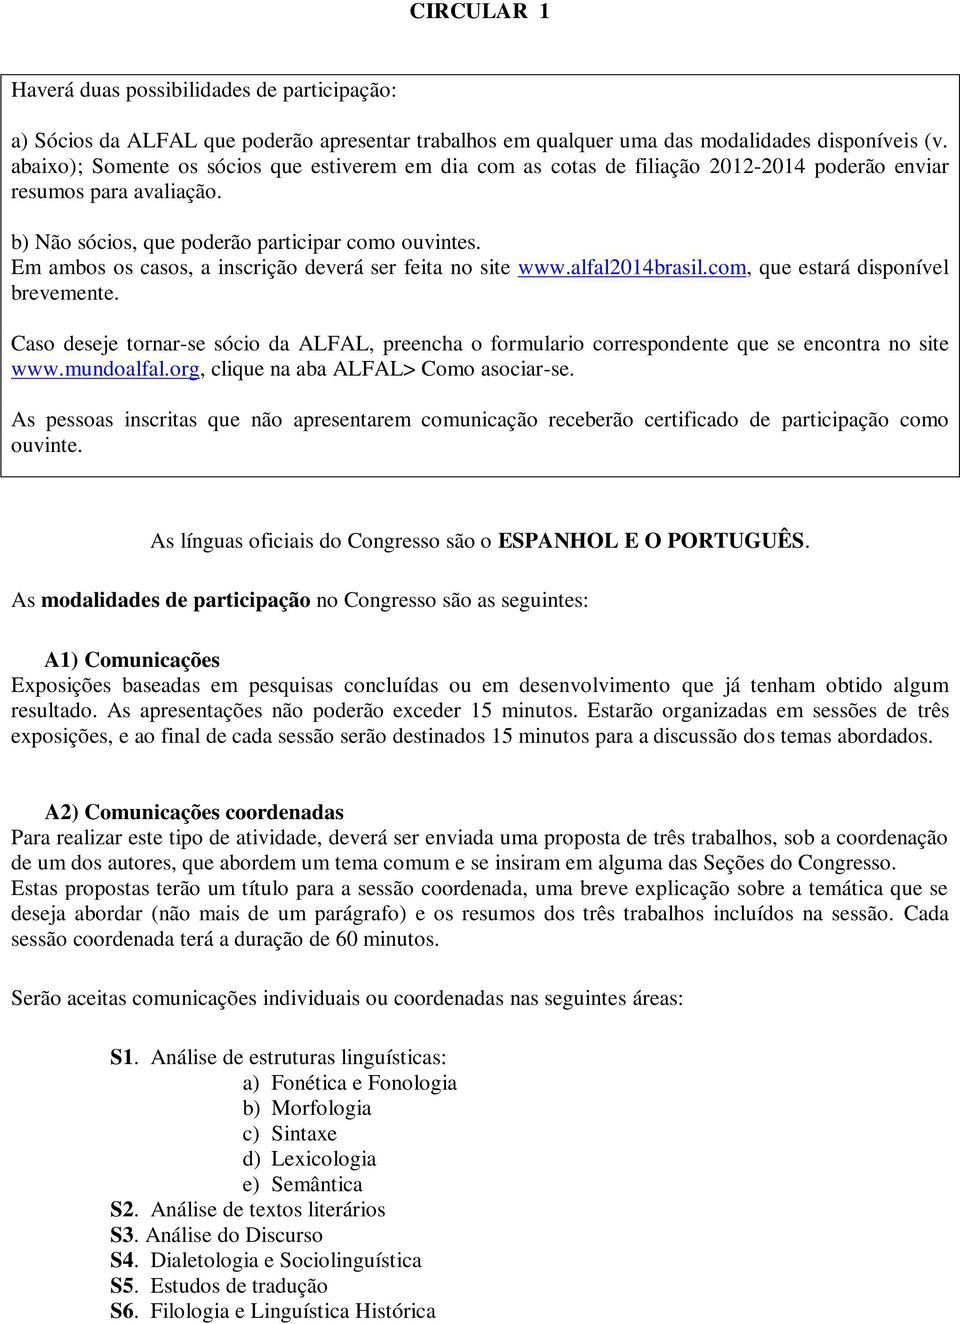 Em ambos os casos, a inscrição deverá ser feita no site www.alfal2014brasil.com, que estará disponível brevemente.